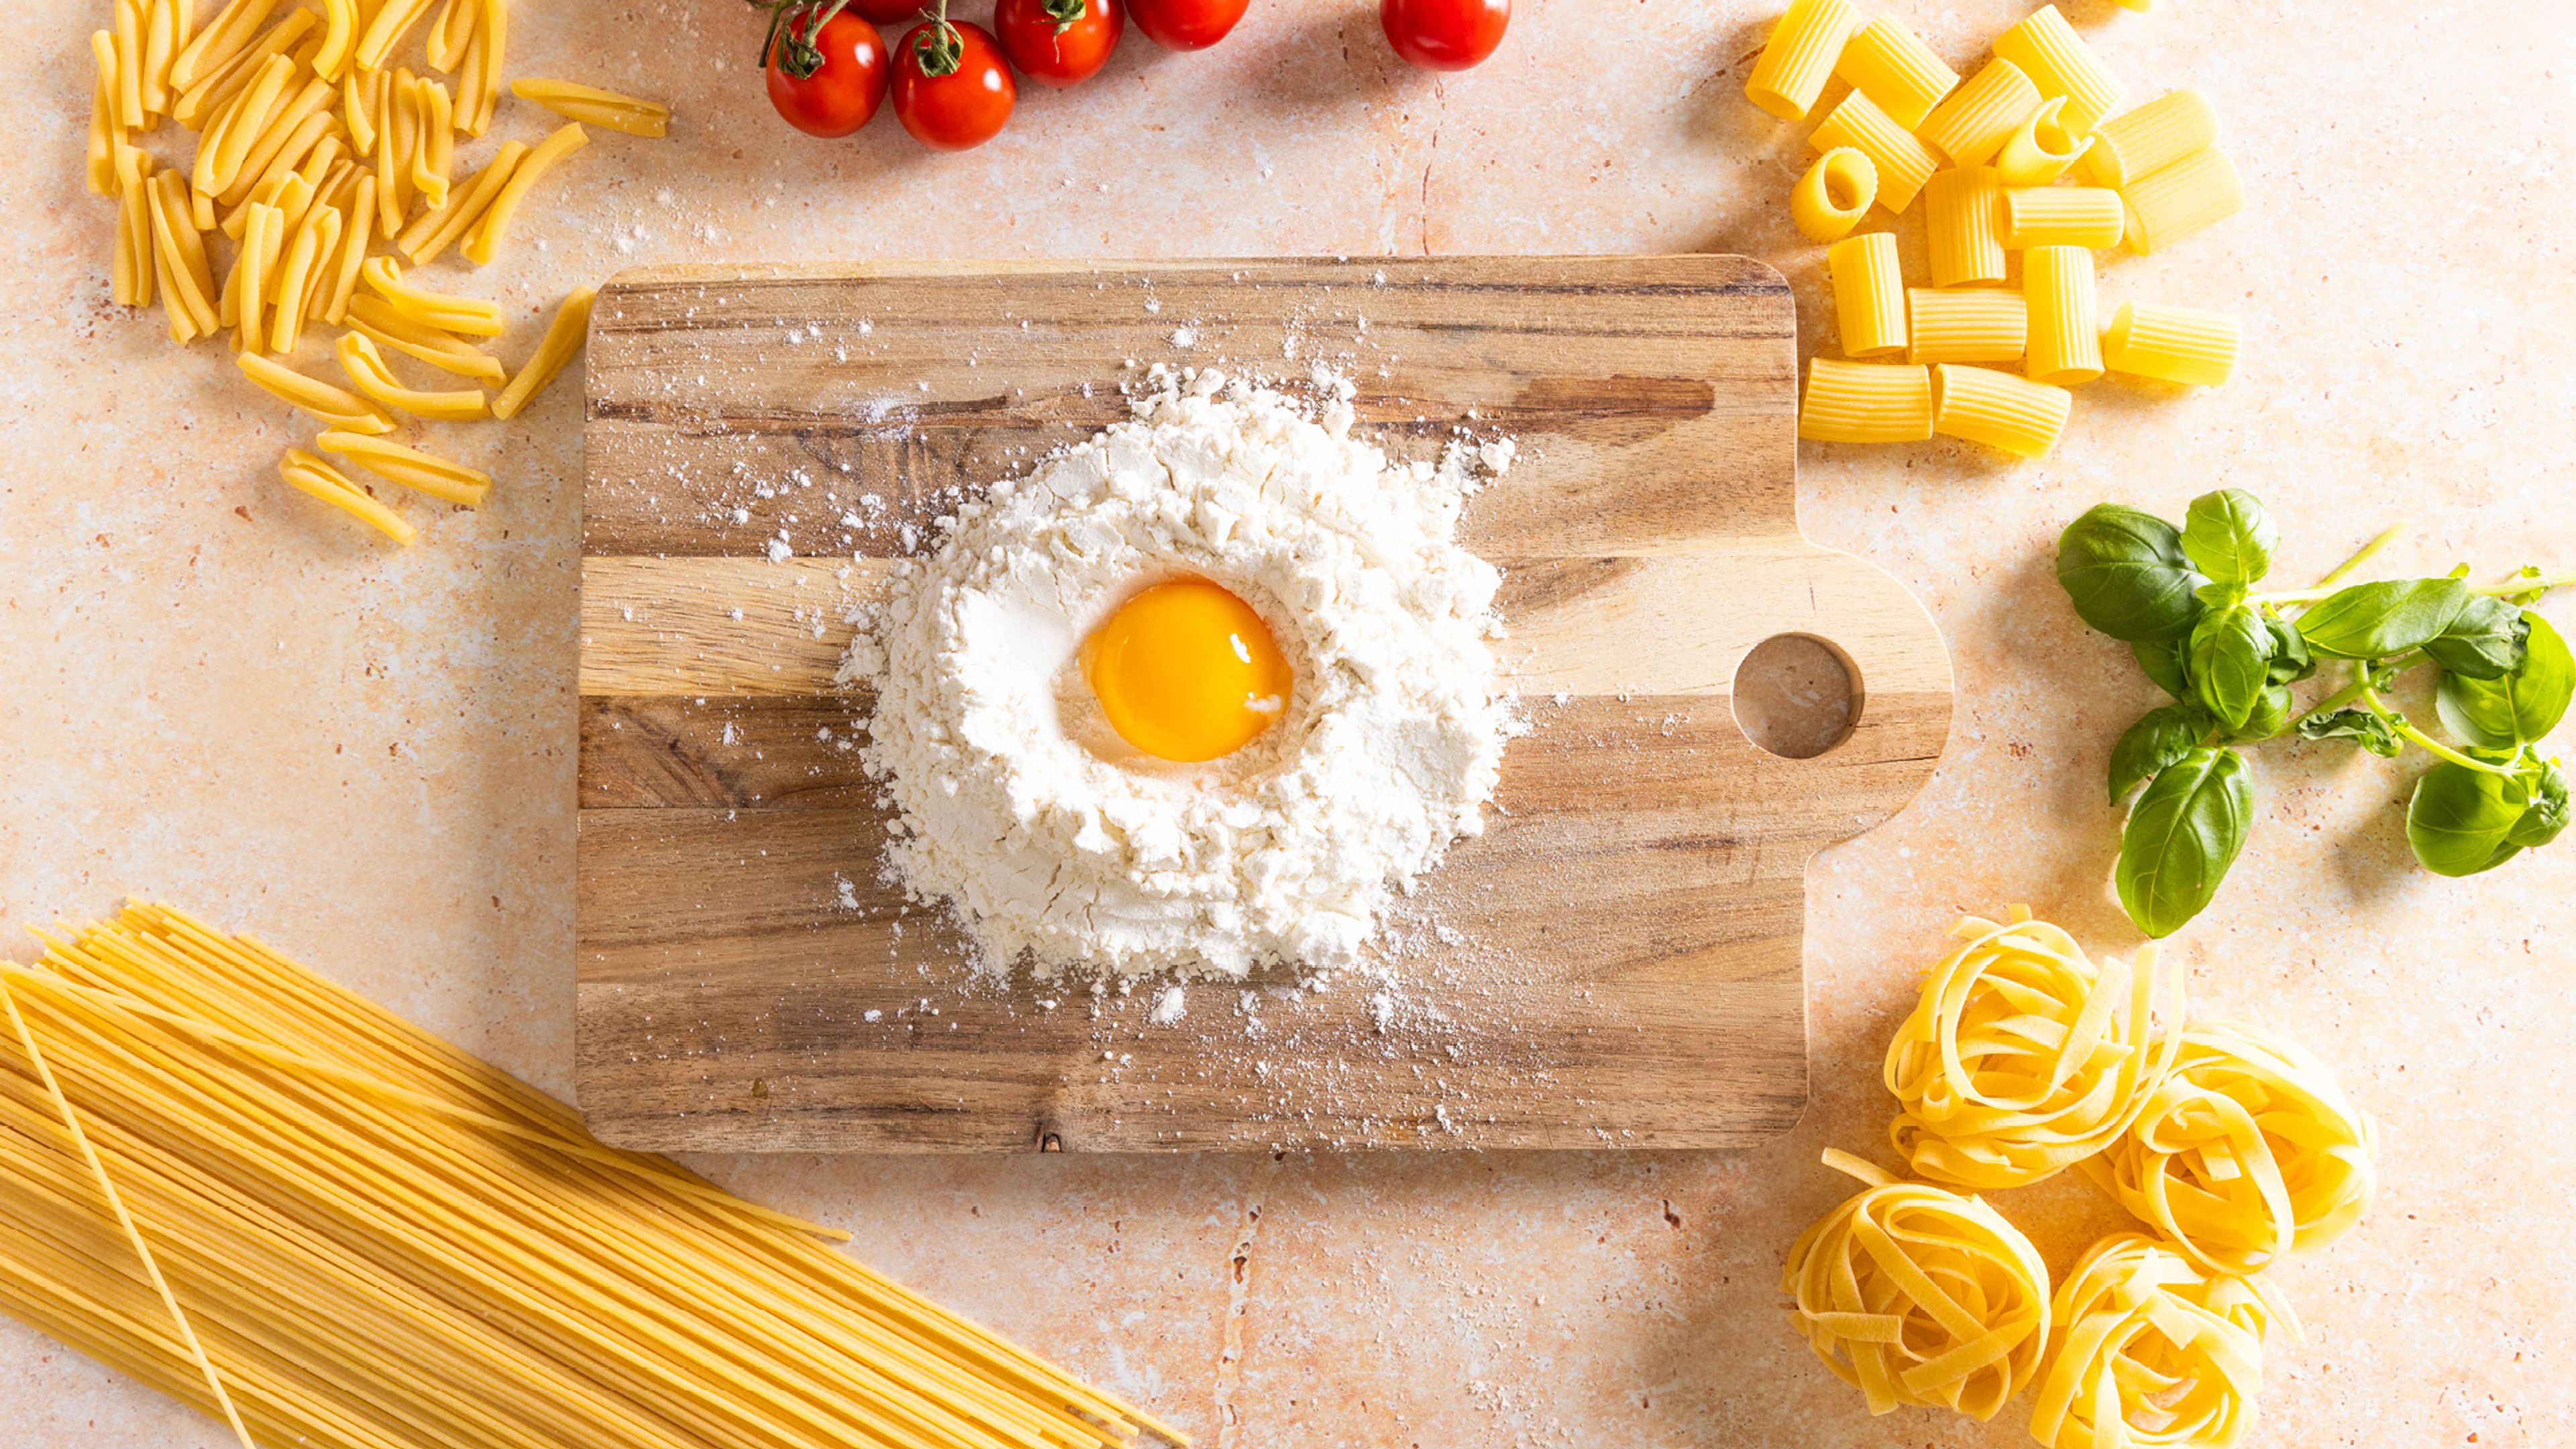 Hjemmelaget pasta - sånn lager du pasta selv!